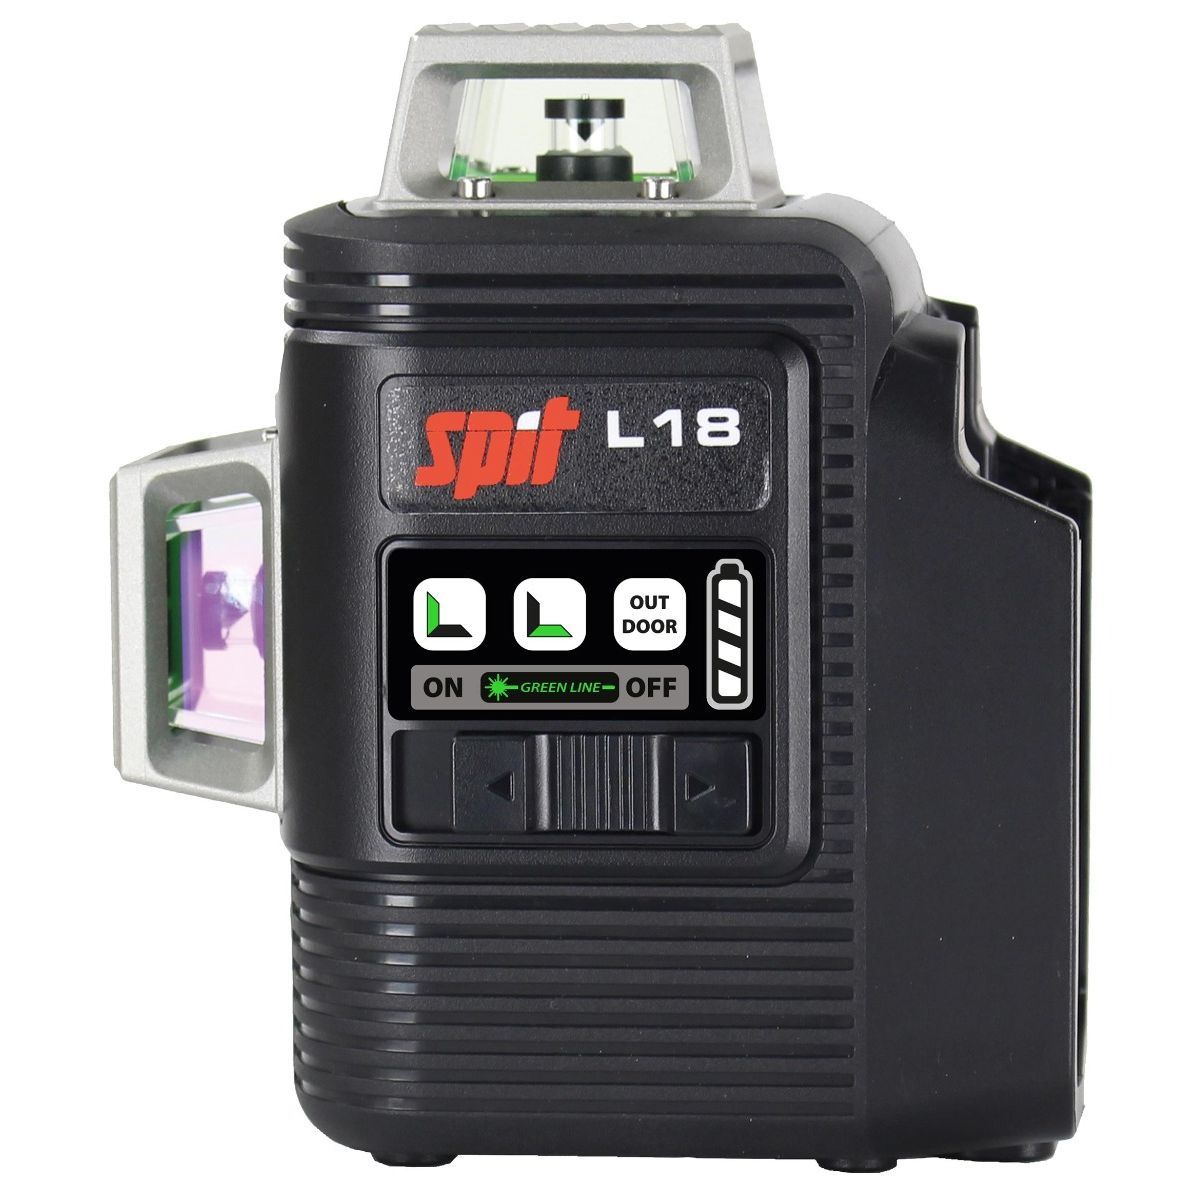 Spit L18 Accu Laser 18V in Koffer - 054558